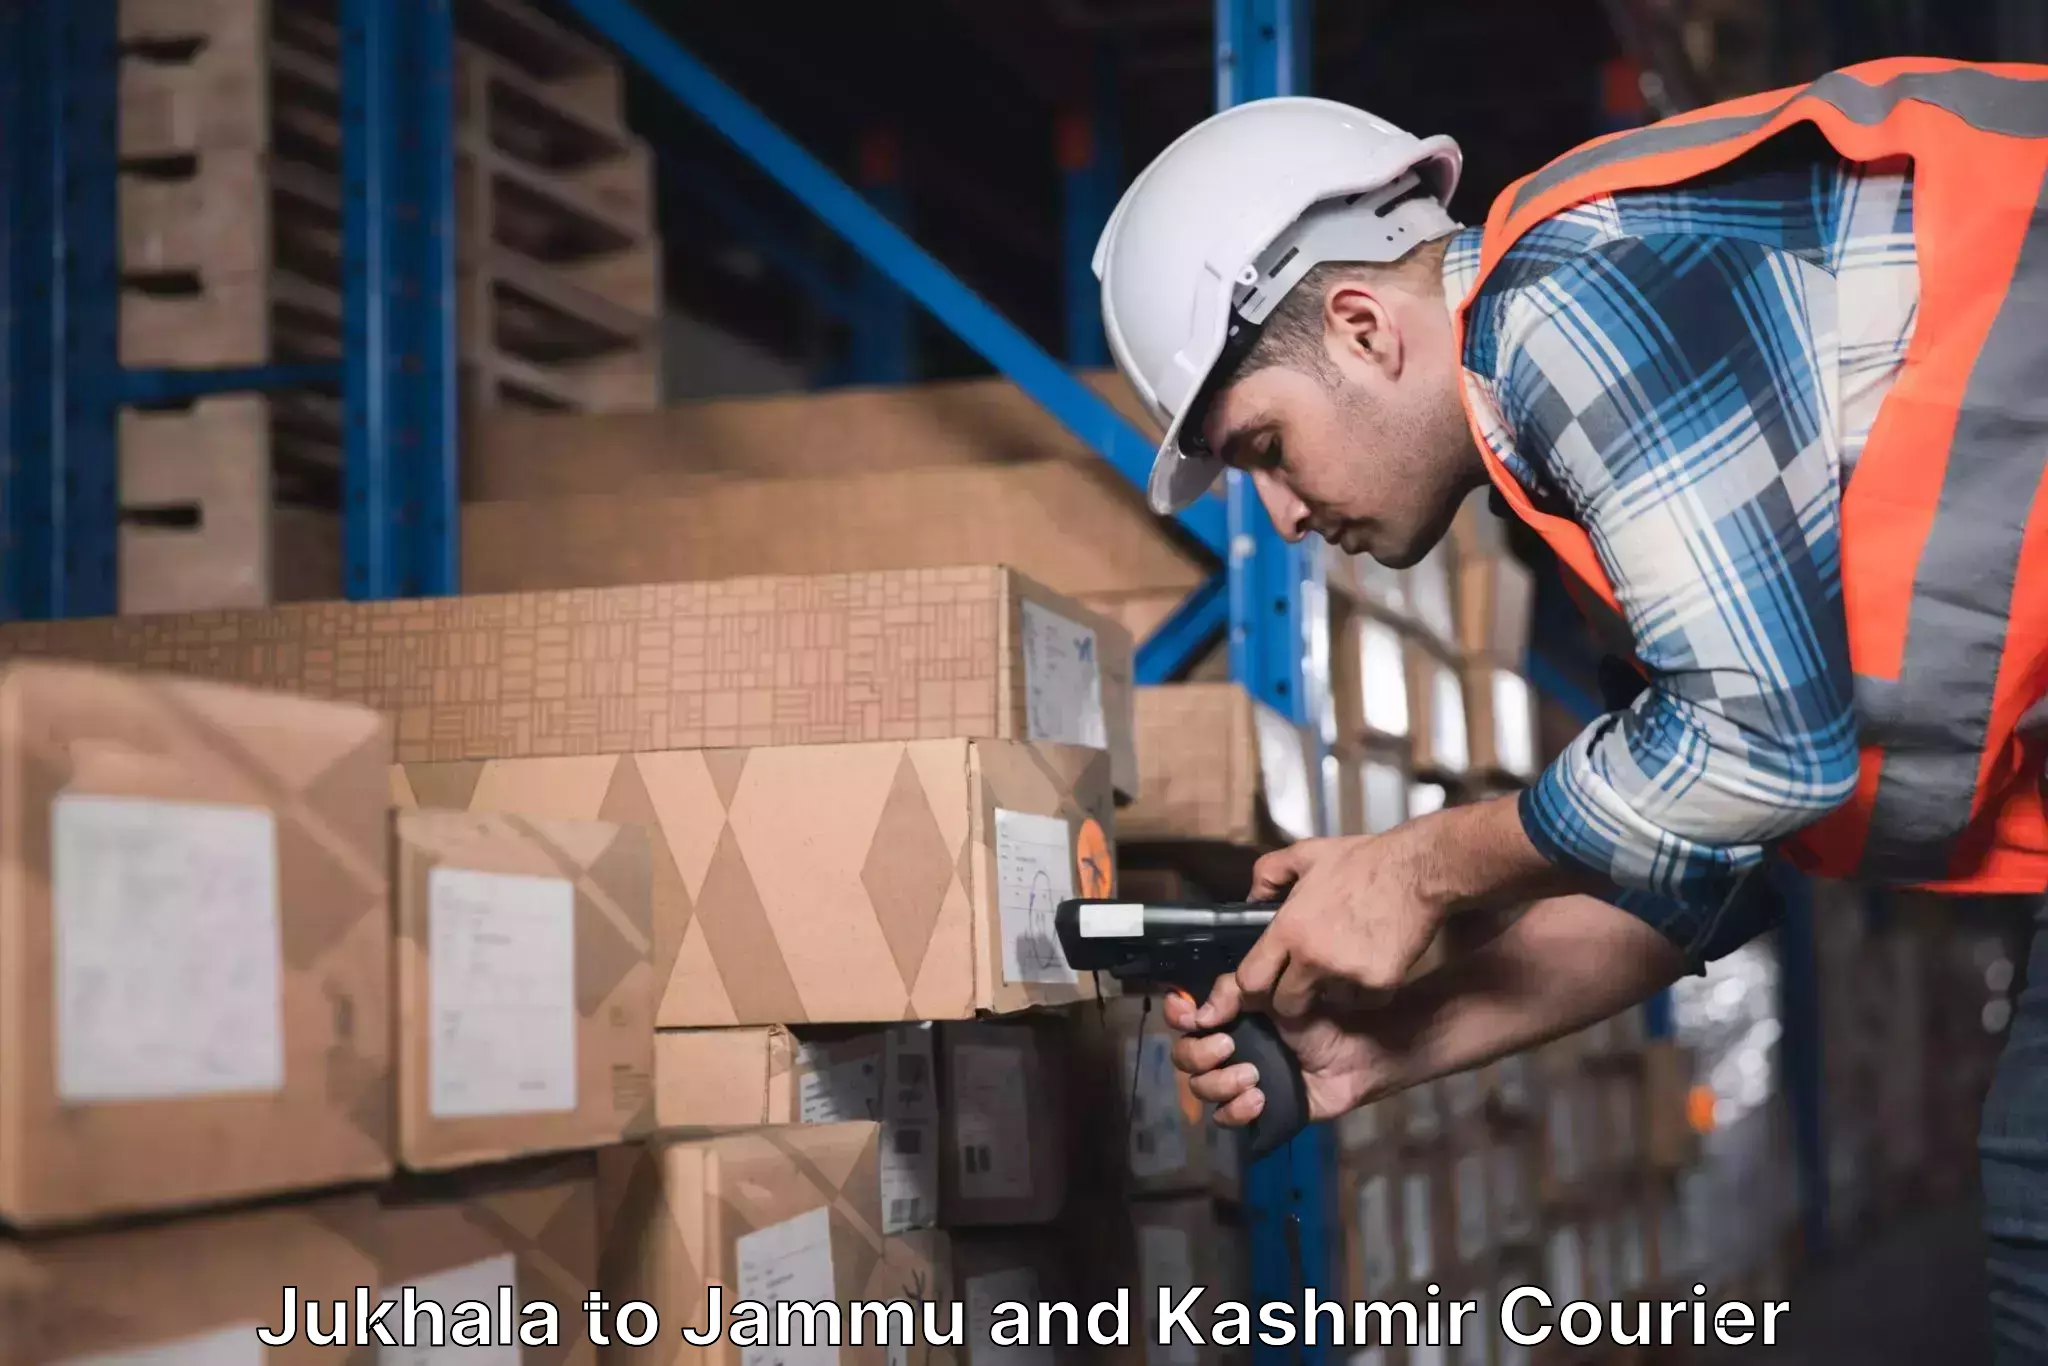 Automated parcel services Jukhala to Kishtwar